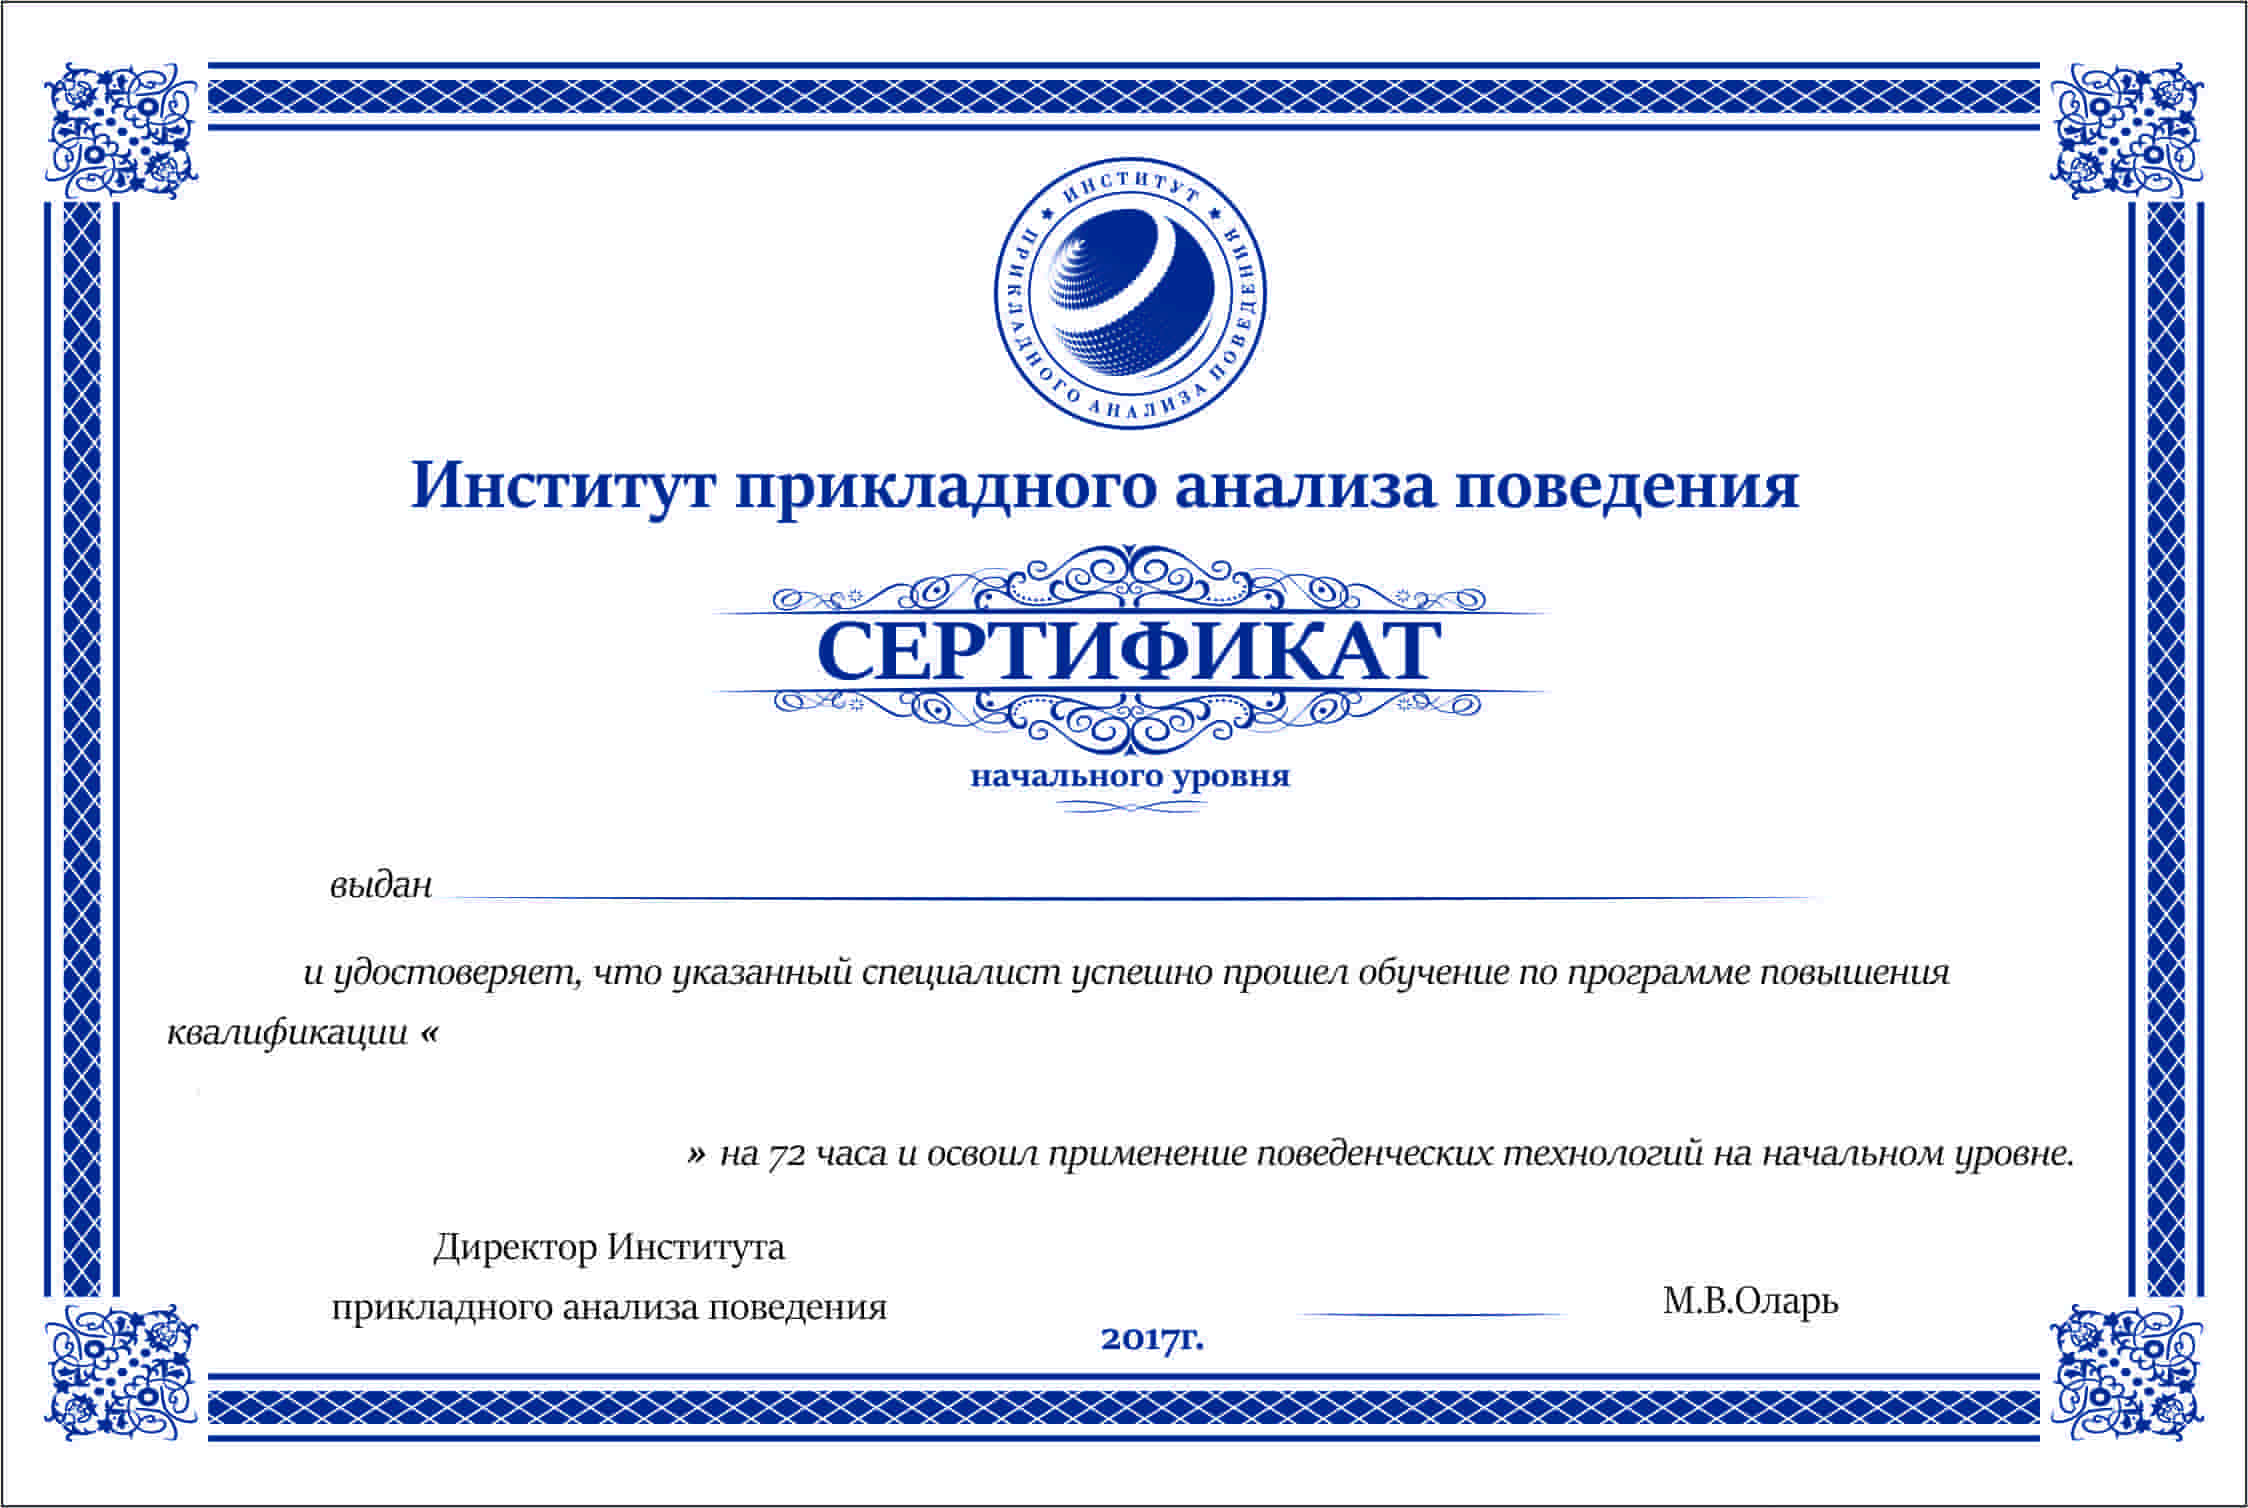 Выданные учебном центром. Сертификат института. Сертификат учебного заведения. Сертификат прикладного анализа поведения.